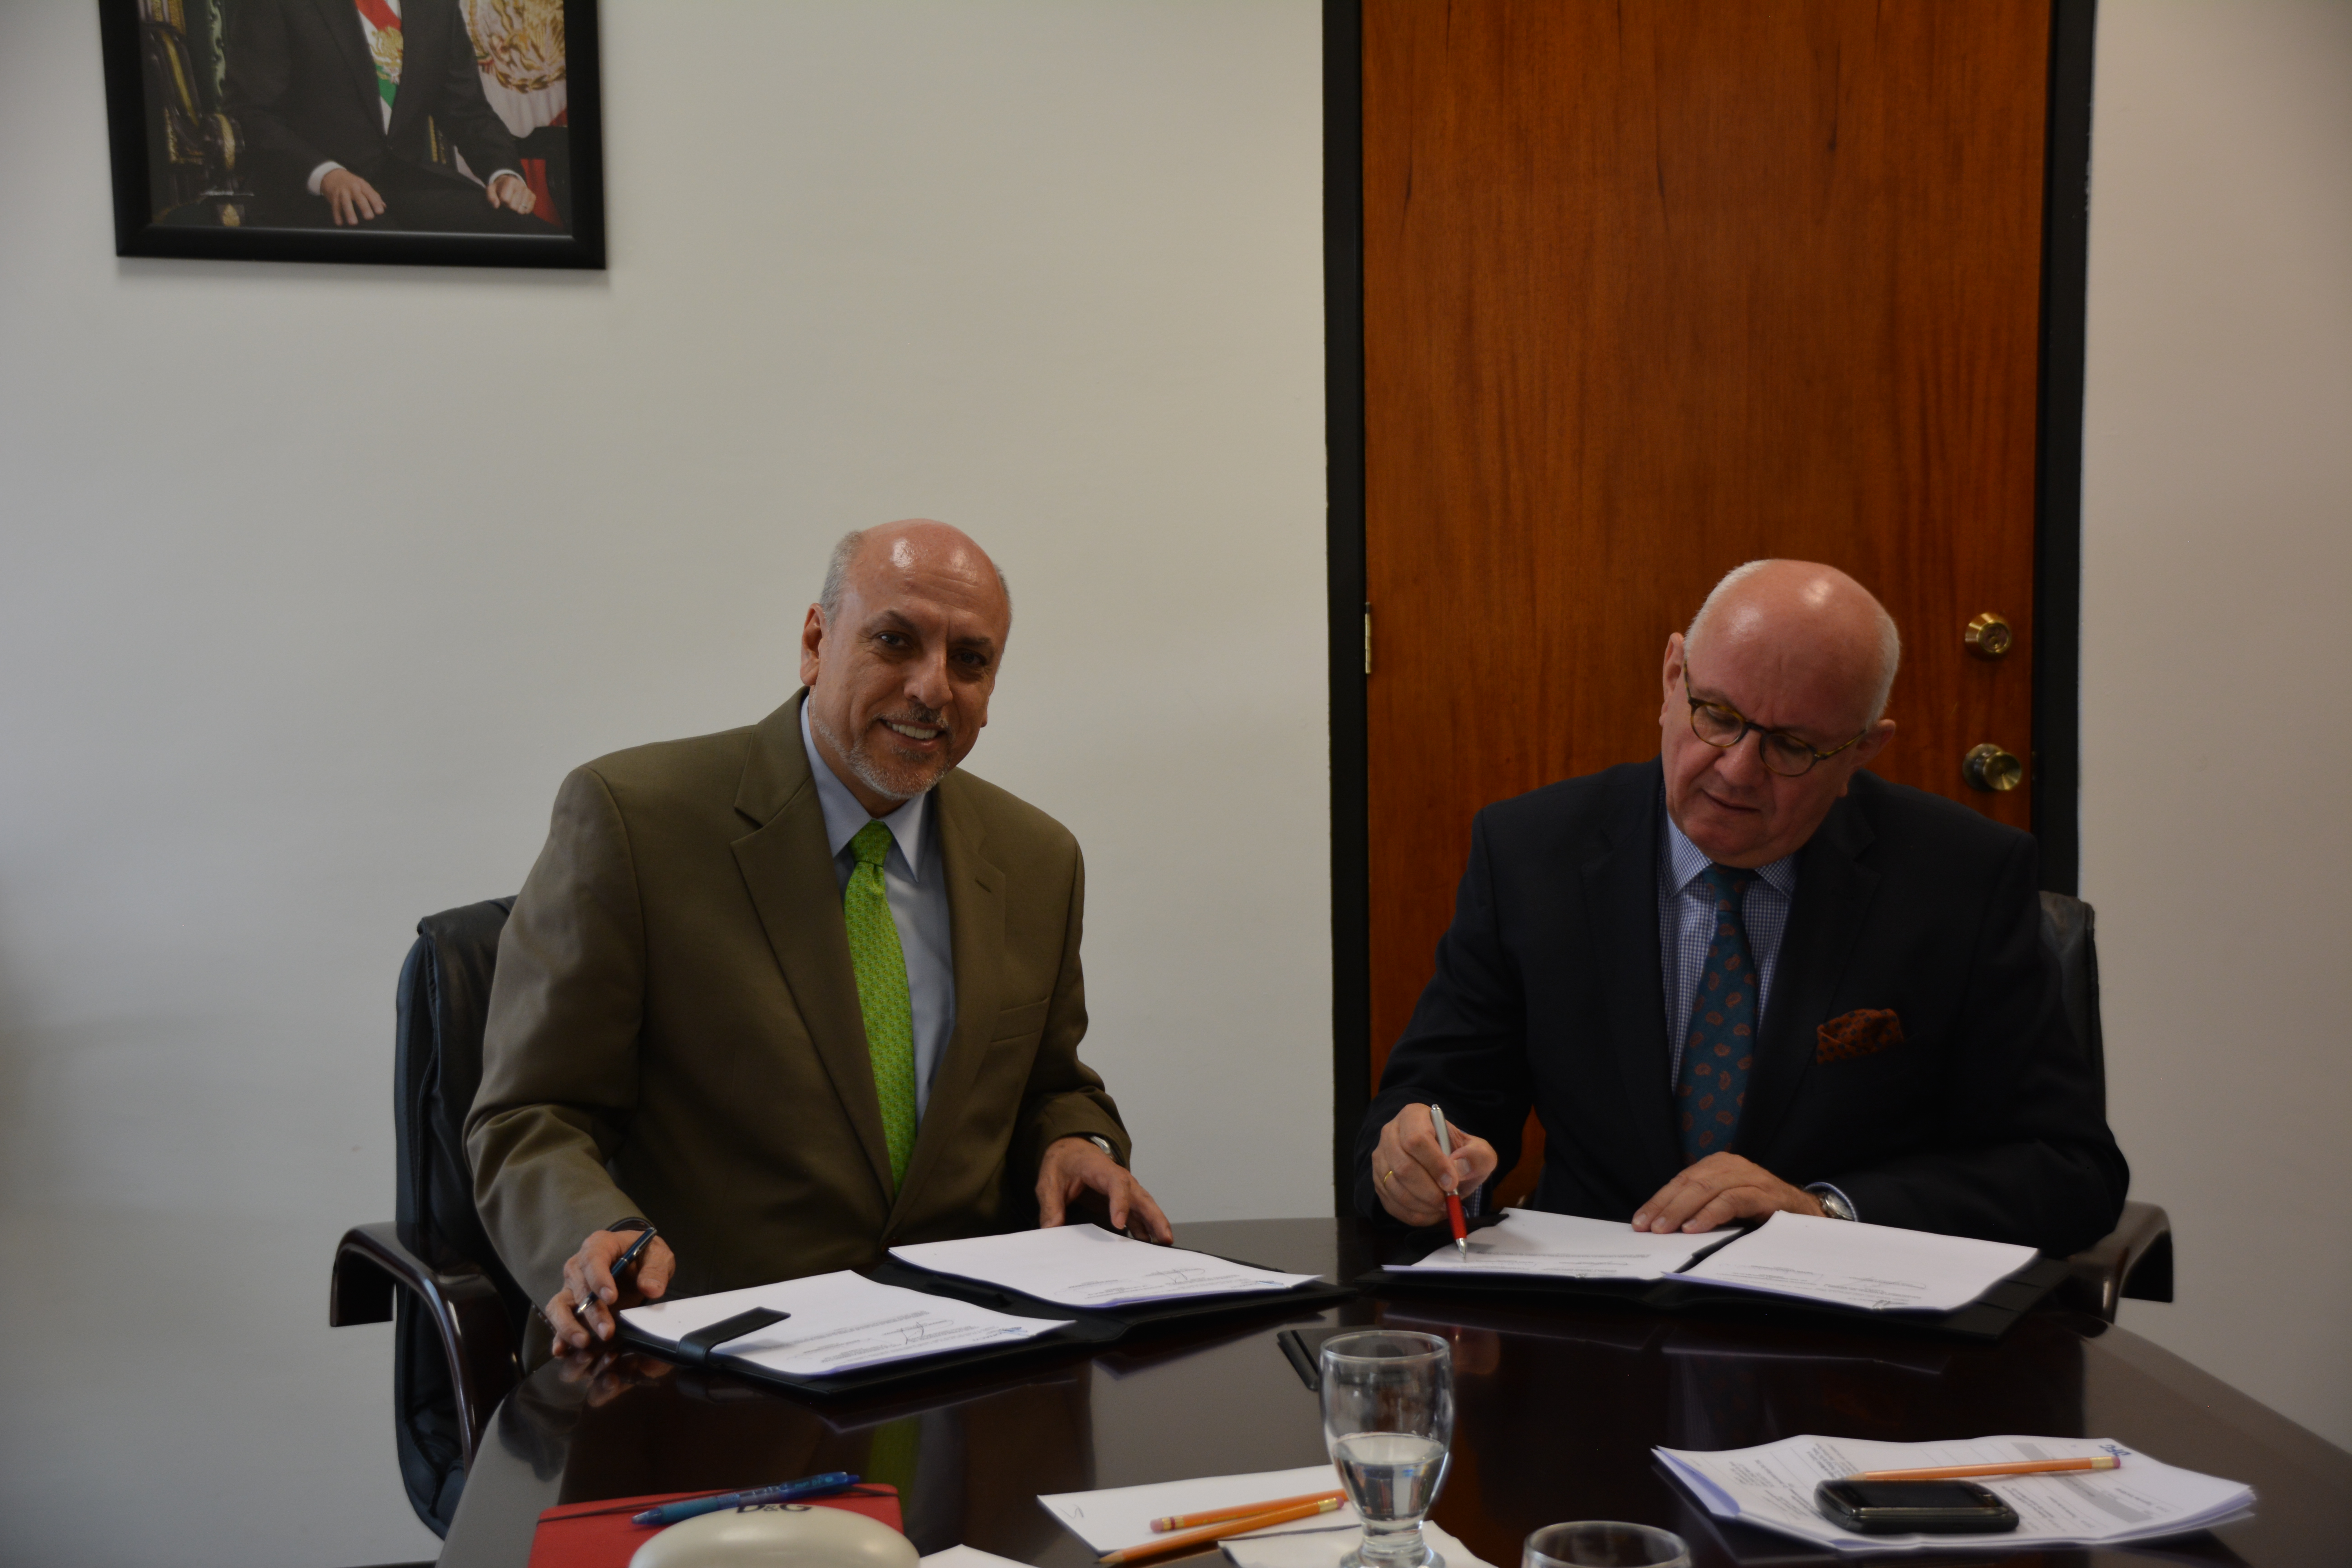 Assinatura do novo acordo com a organização parceira CONACYT, no México, pelo Presidente da DFG, Prof. Peter Strohschneider (dir.), e pelo Diretor Geral do CONACYT, Prof. Enrique Cabrero Mendoza (esq.).